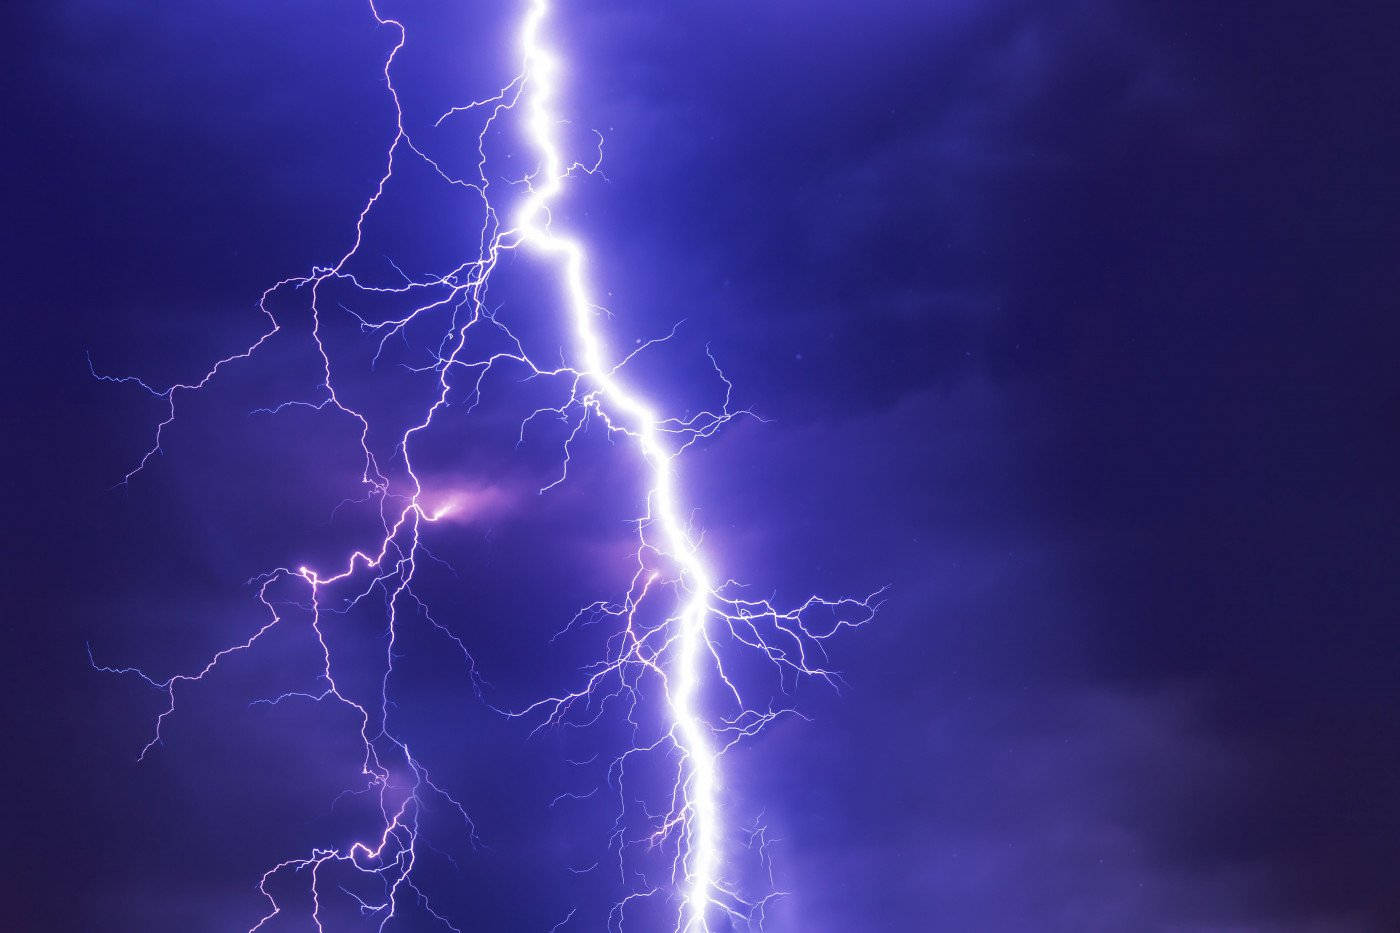 Thunderstorm Lightning Strike Picture